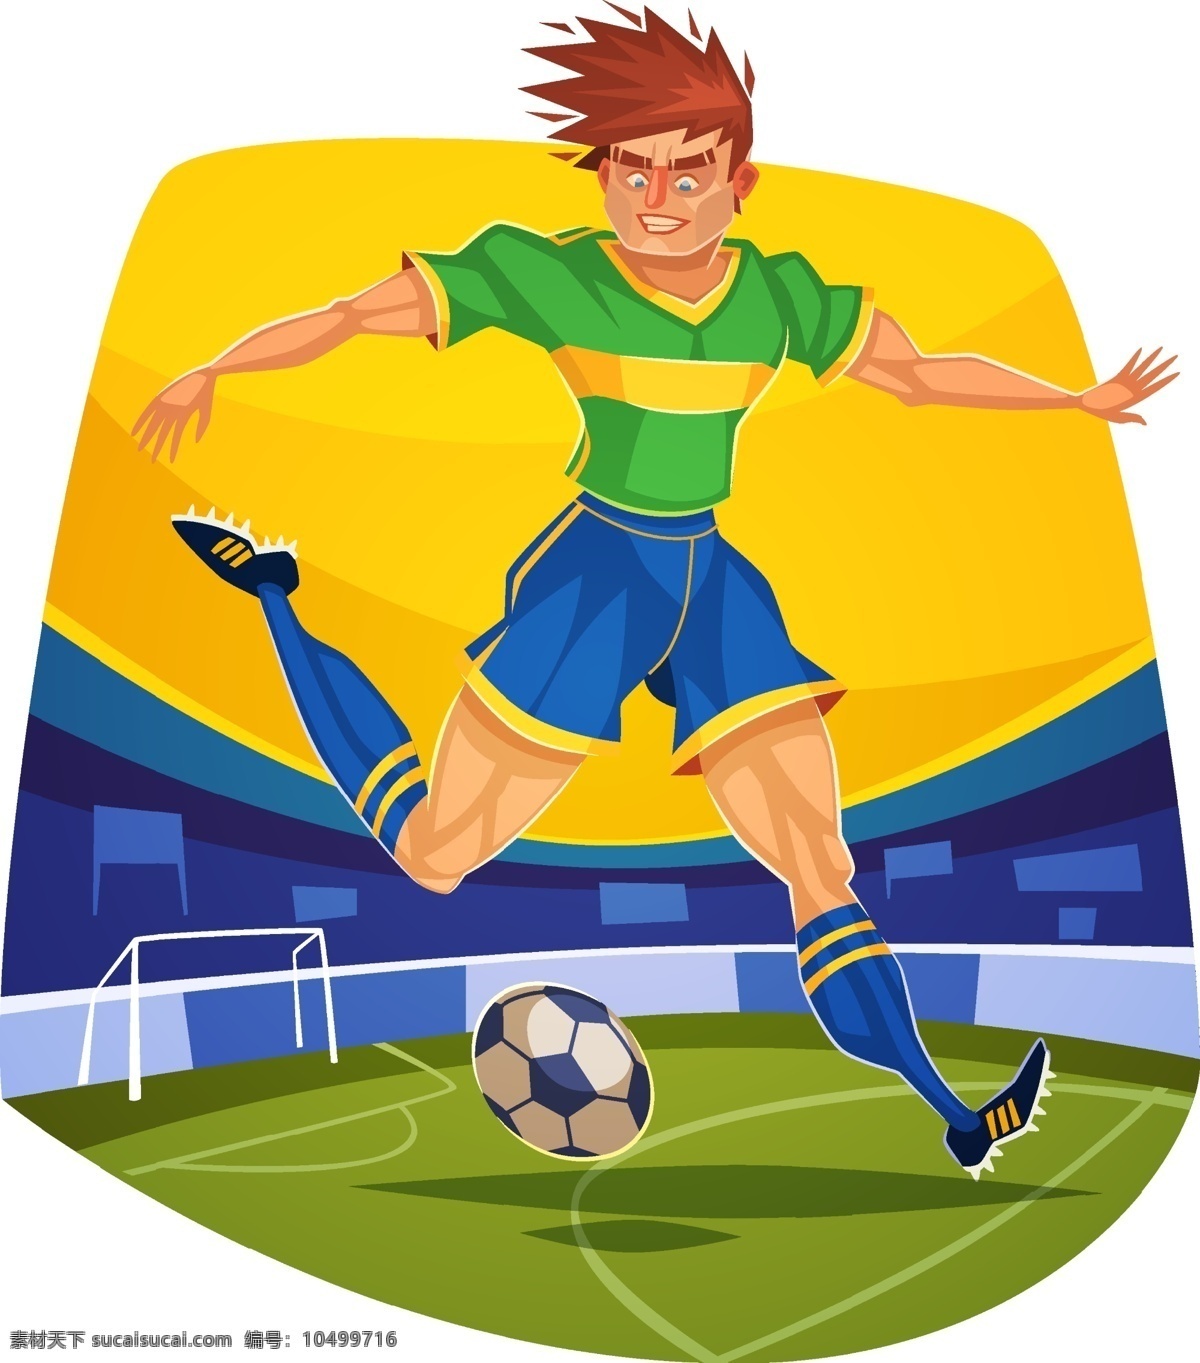 卡通足球球员 卡通 足球 球员 模板下载 巴西 世界杯 足球运动员 卡通队员 足球赛事 体育运动 生活百科 矢量素材 白色